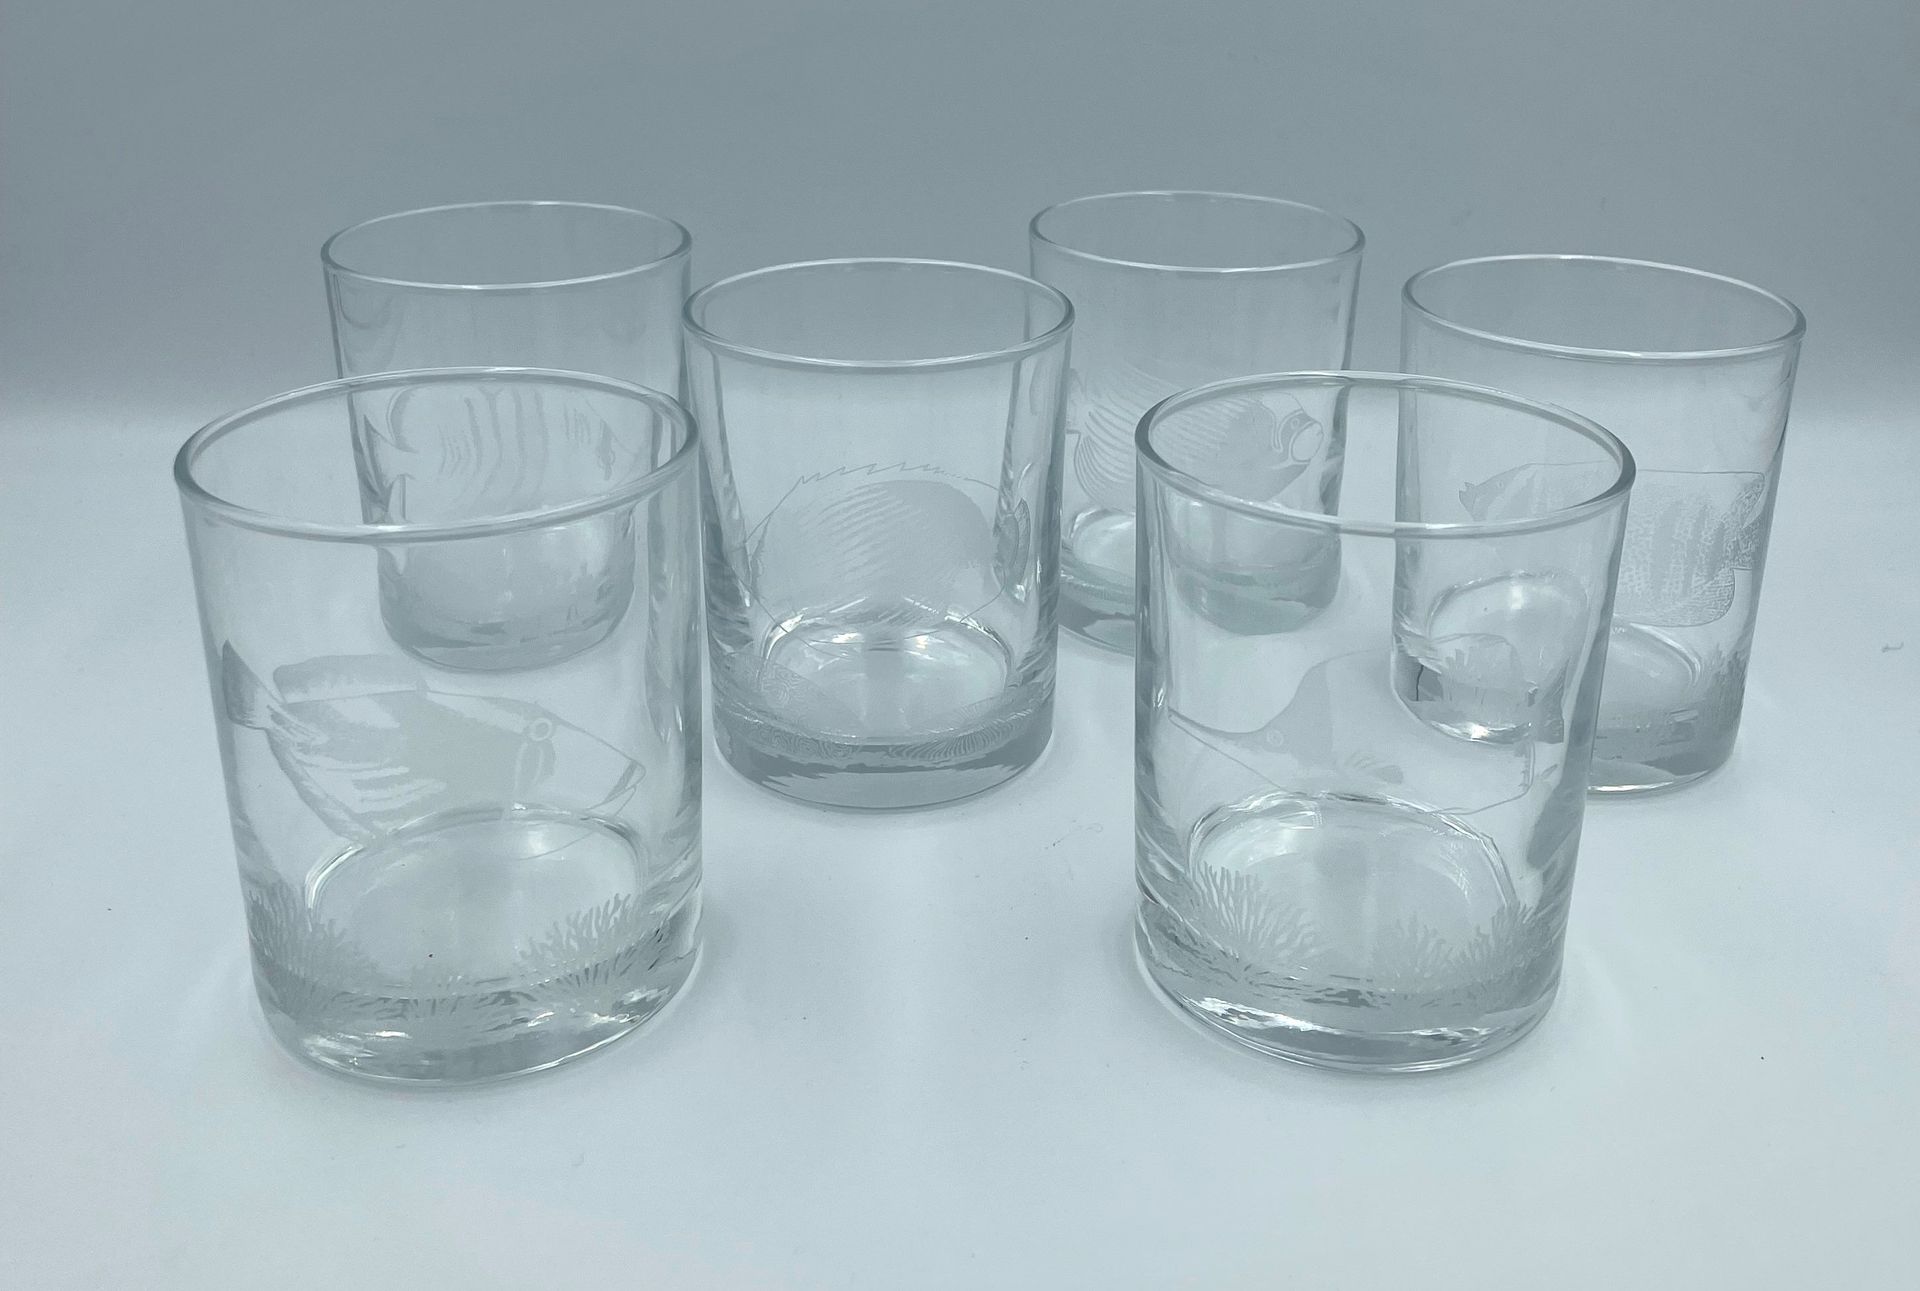 Null Set di sei bicchieri da acqua in vetro con pesci tropicali incisi.